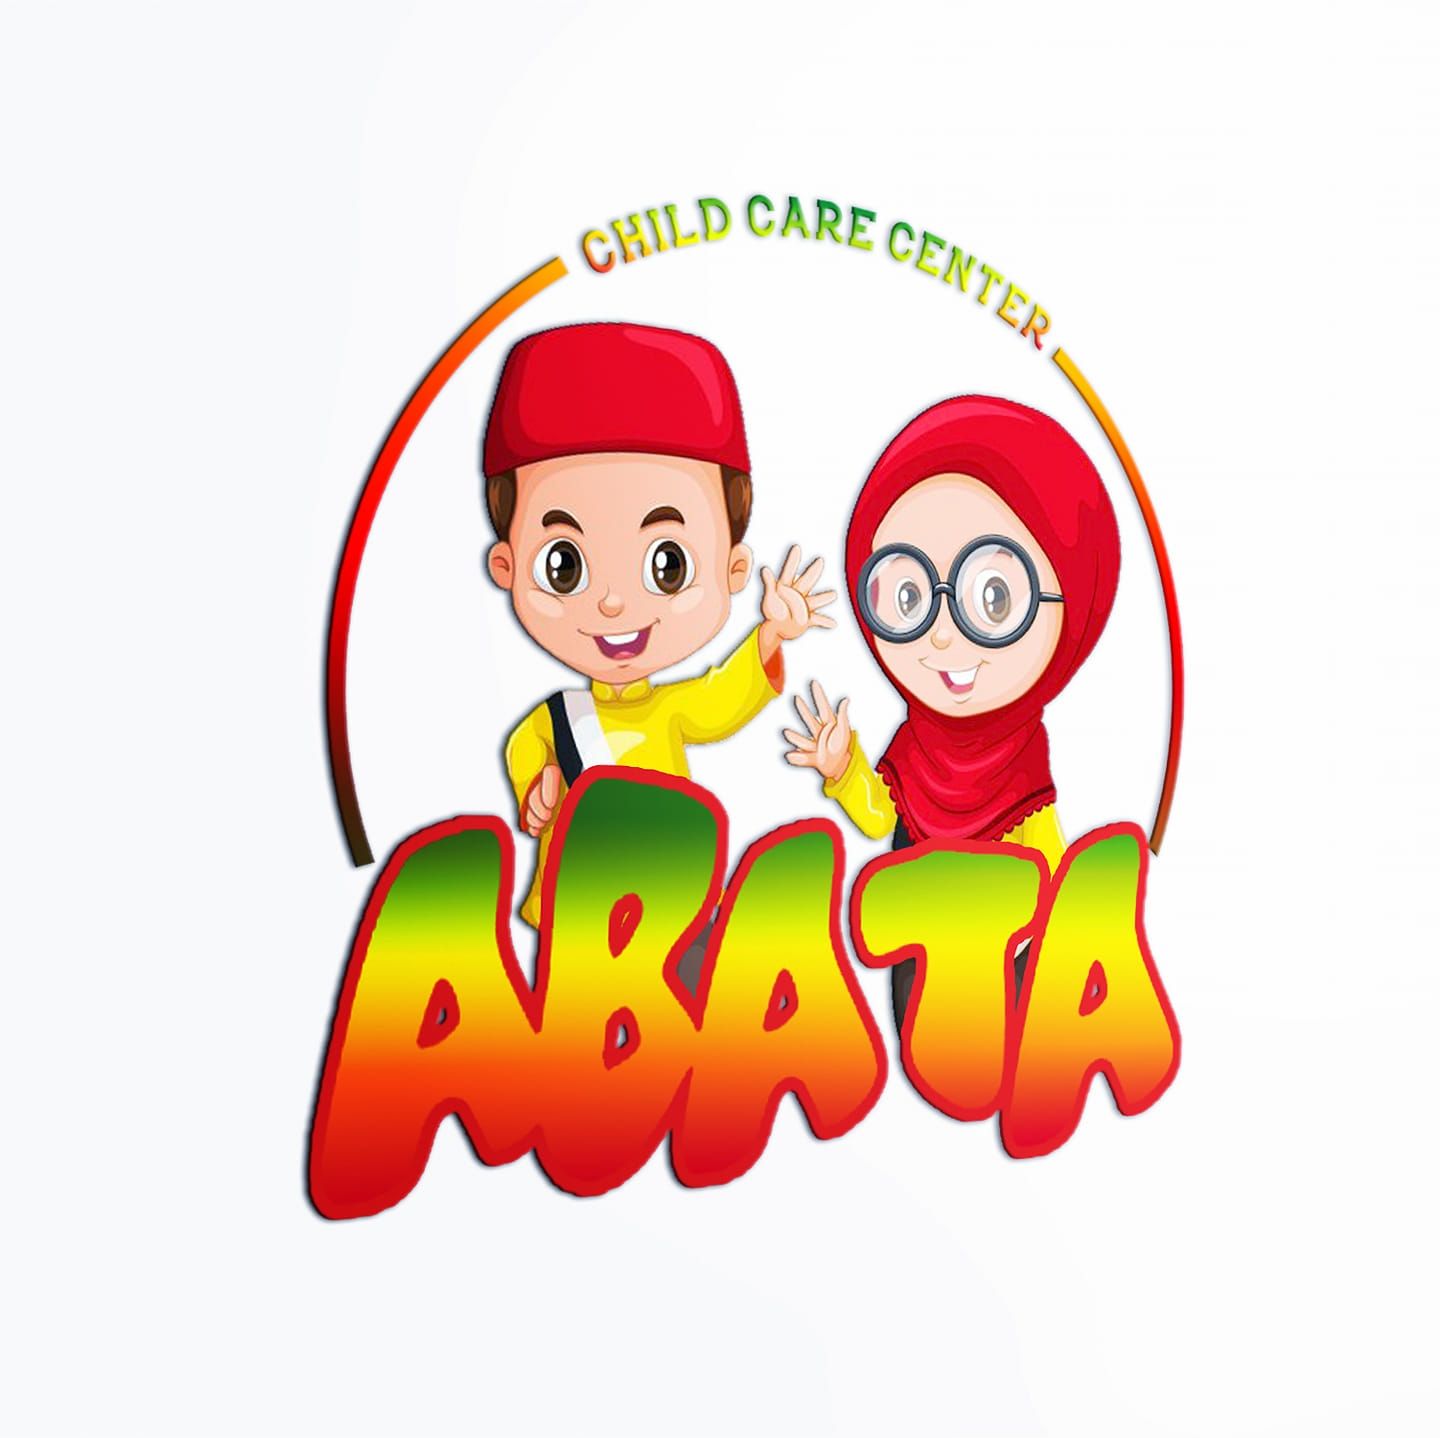 abata-bistari-abata-child-care-center-2724